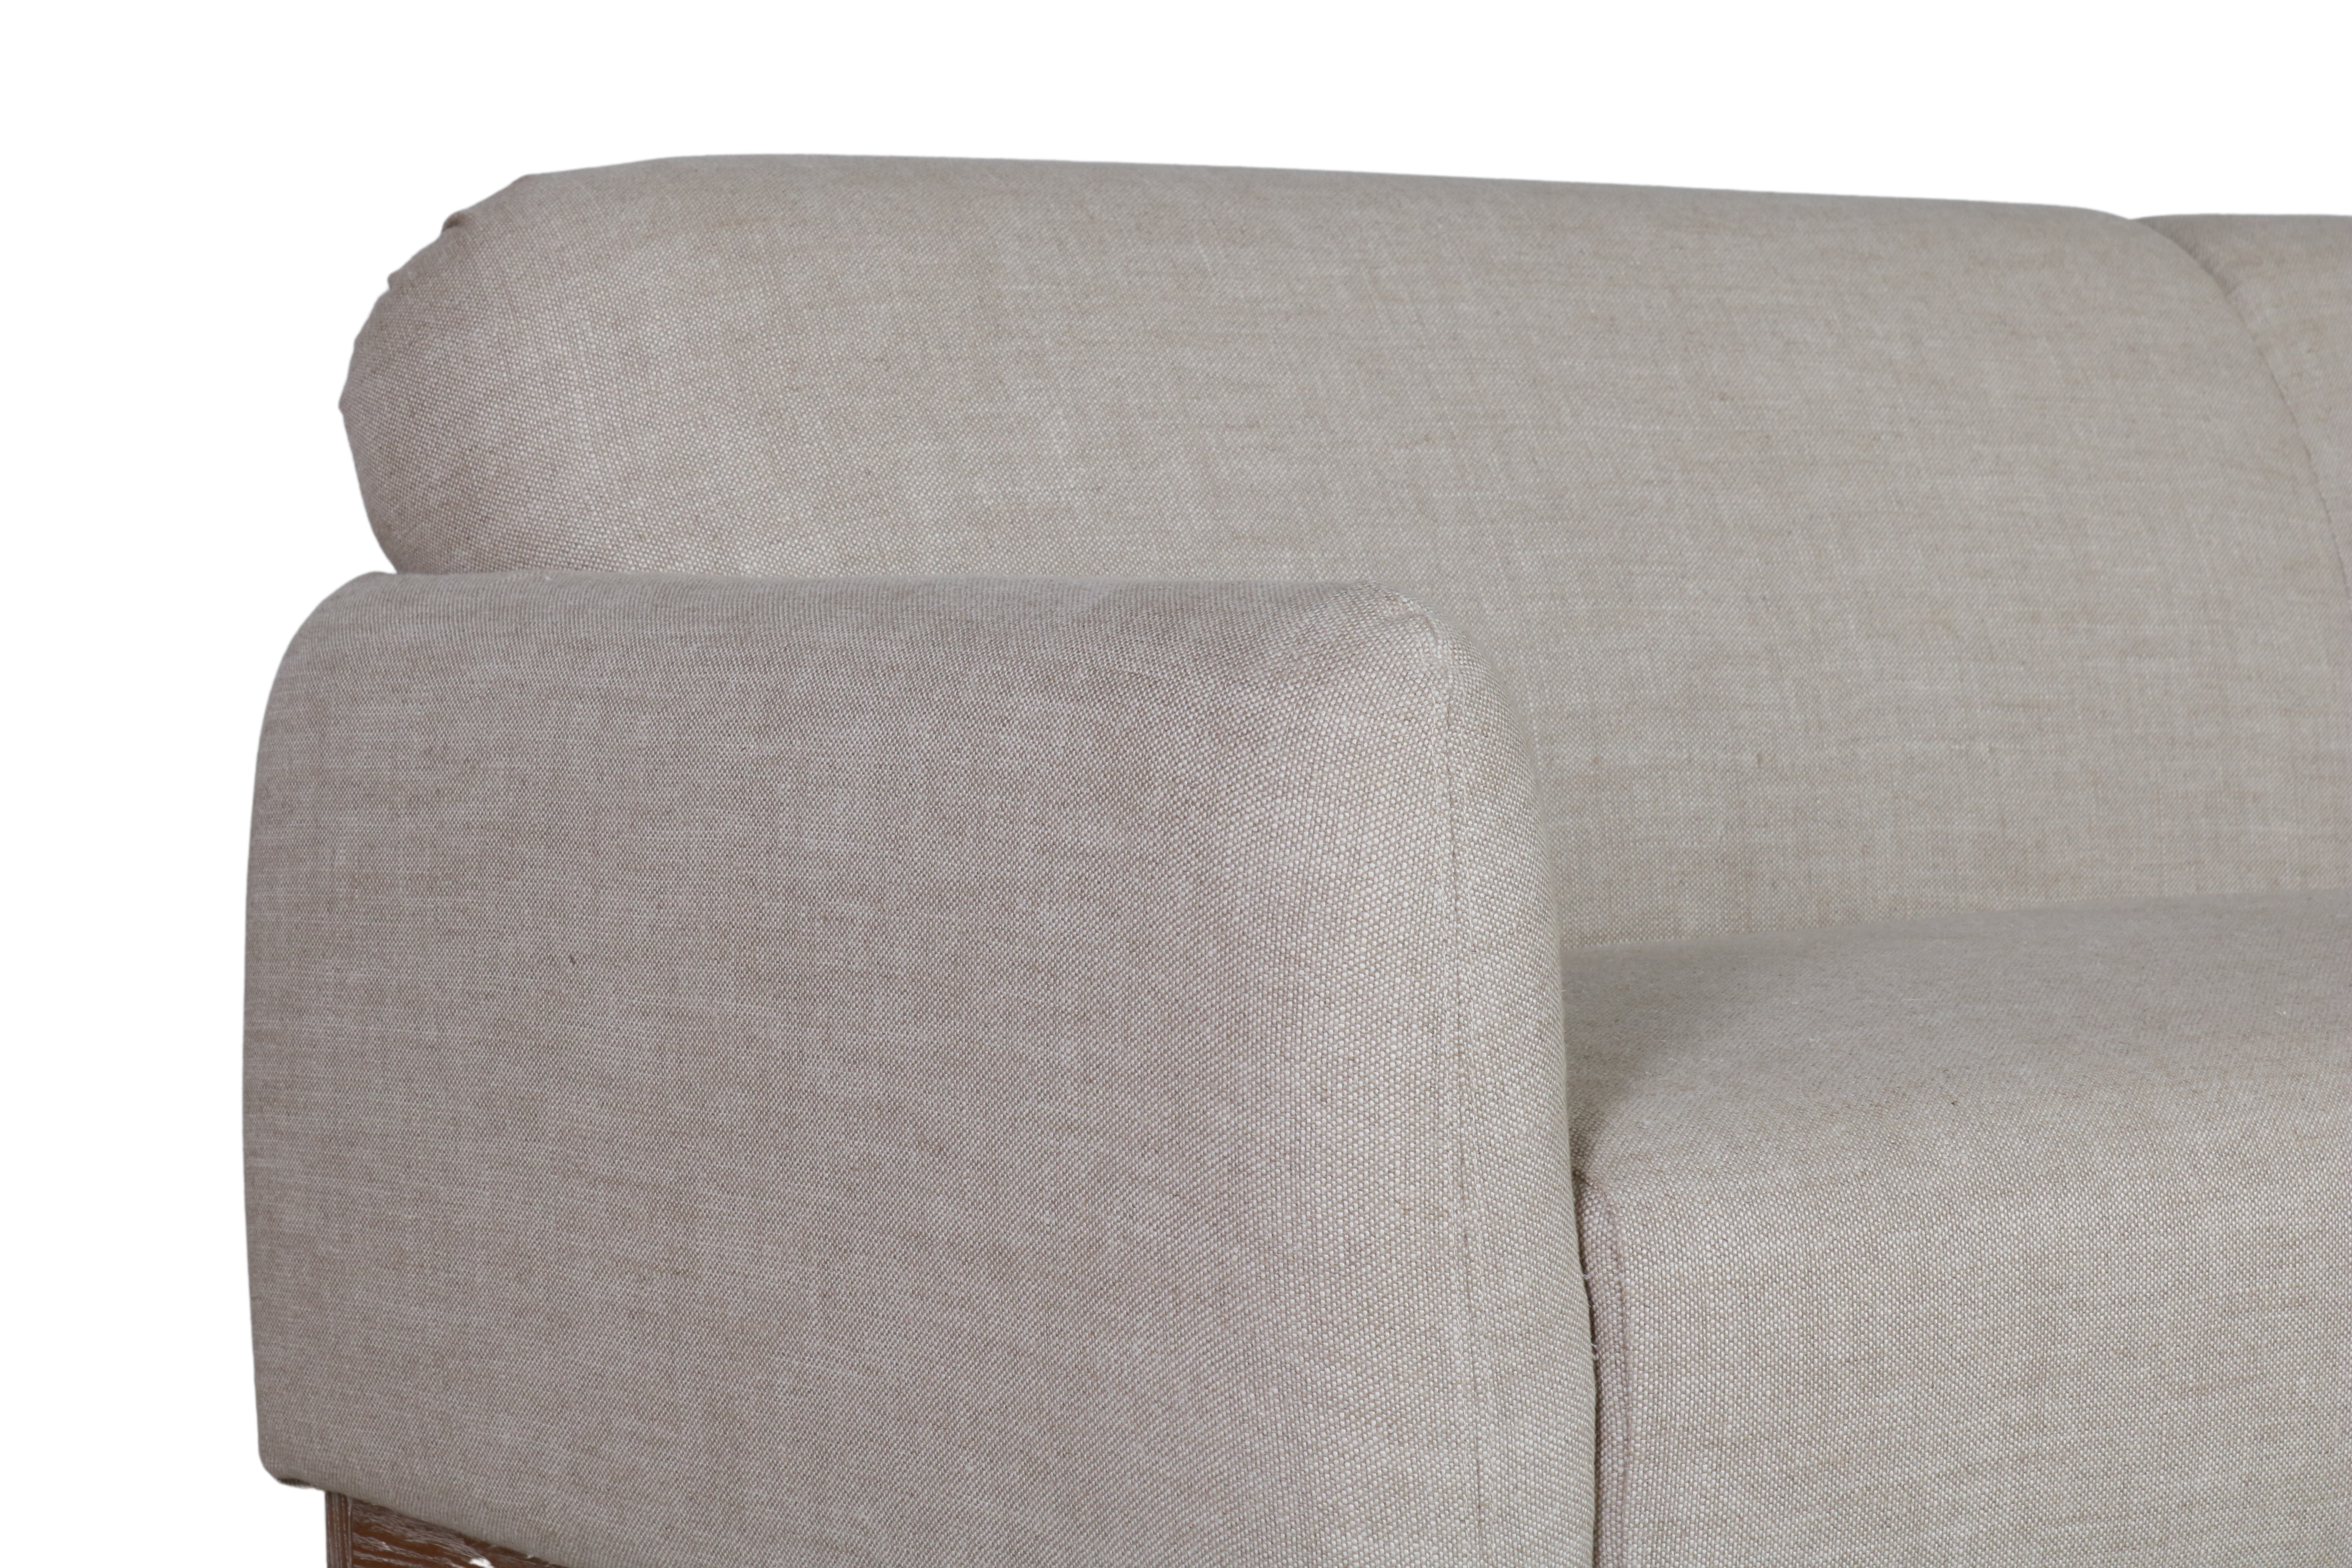 Linen modern sofa with oak legs